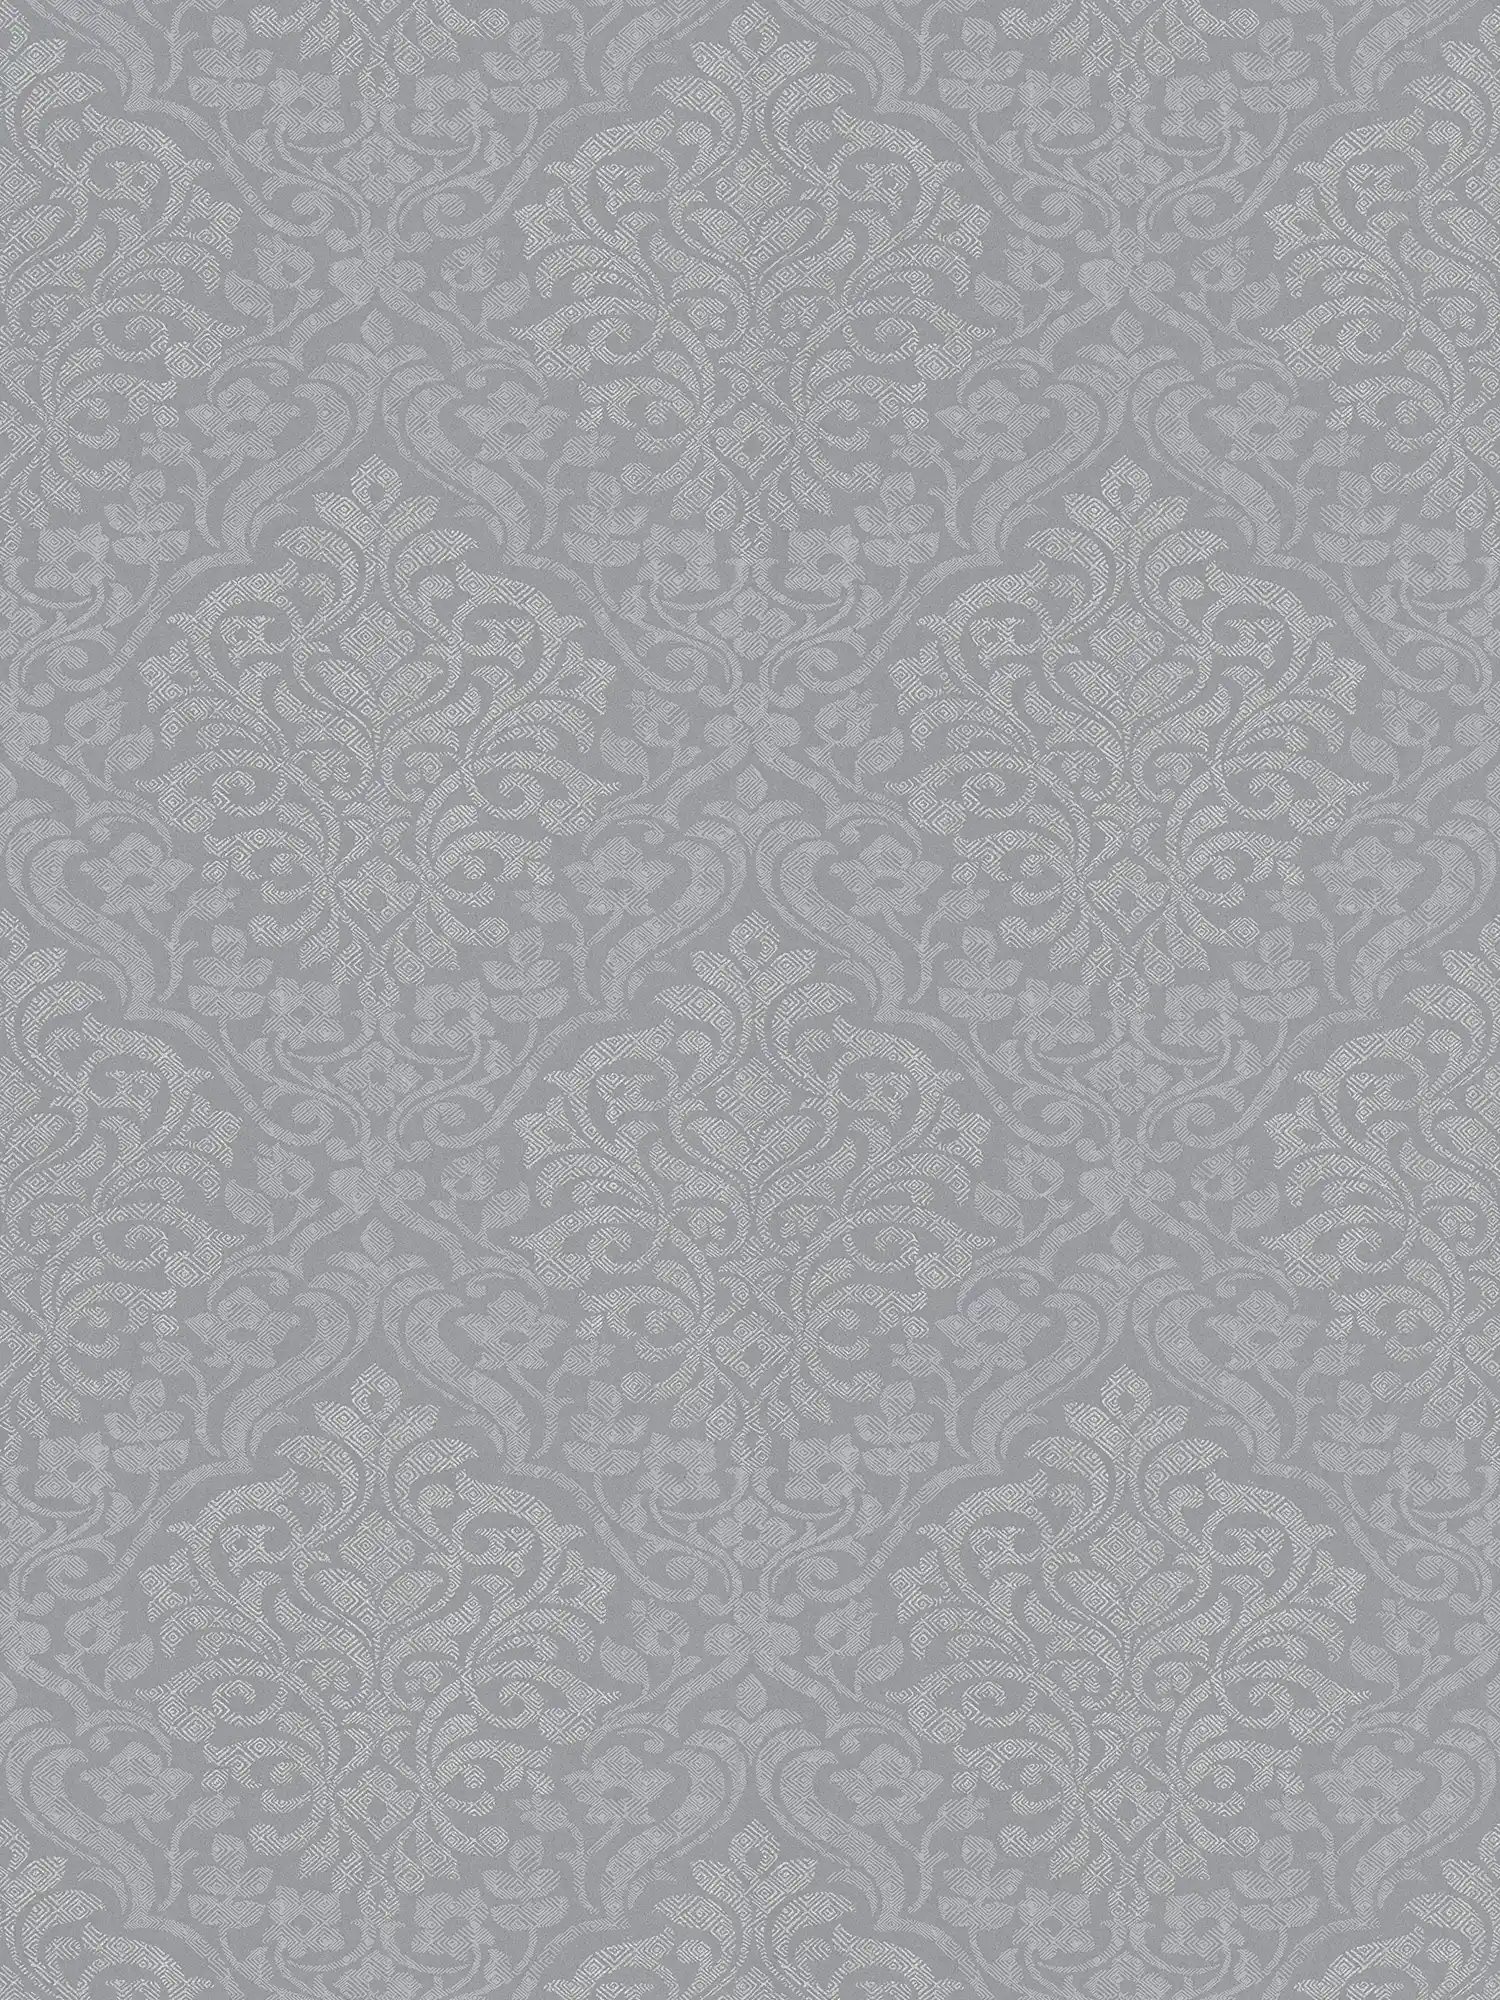 Papier peint floral ornemental motif losange style ethnique - gris, argenté
